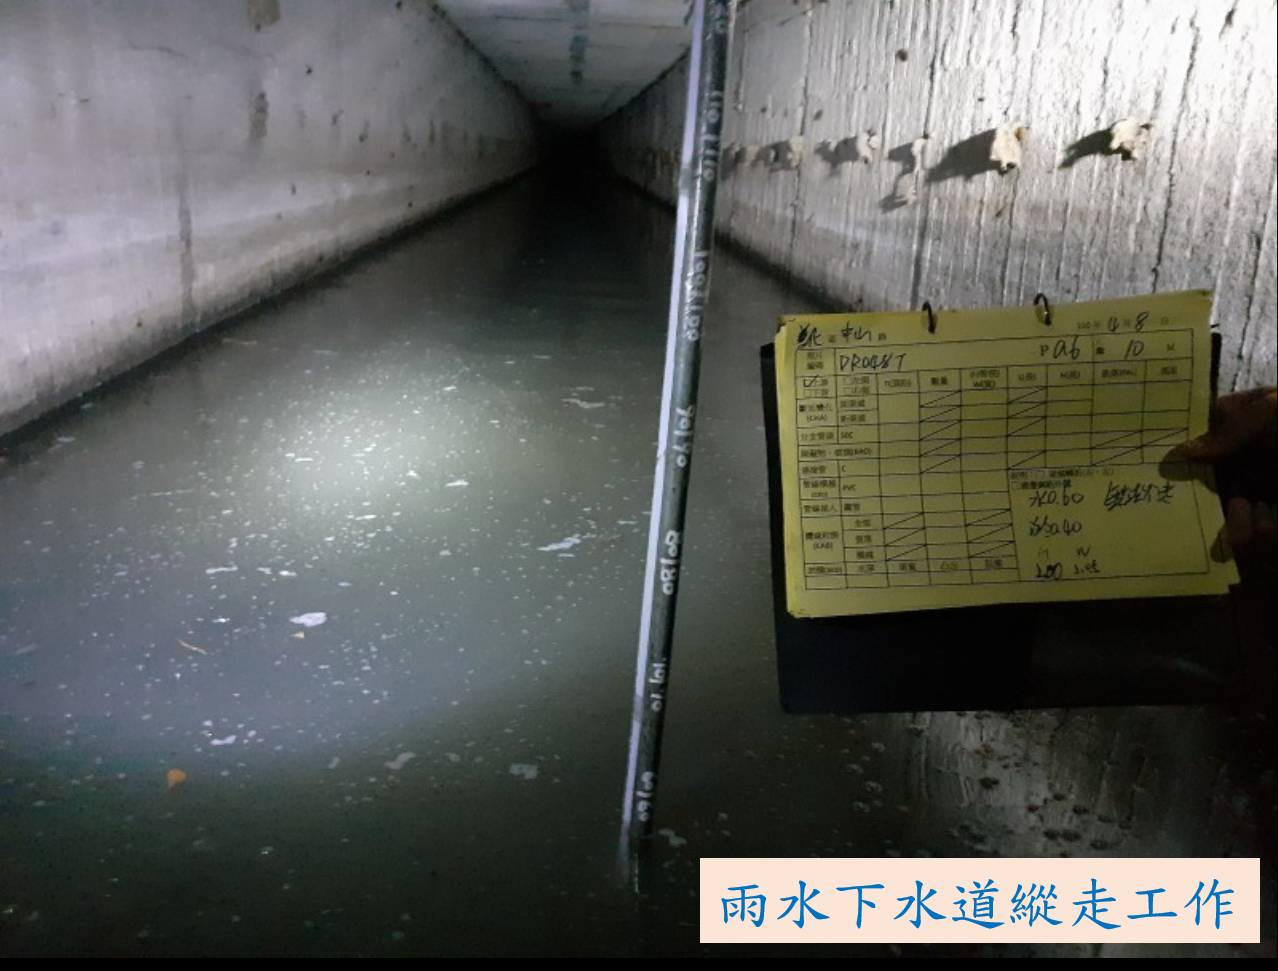 市府投入治水建設 減緩水患威脅 打造「宜居臺南」